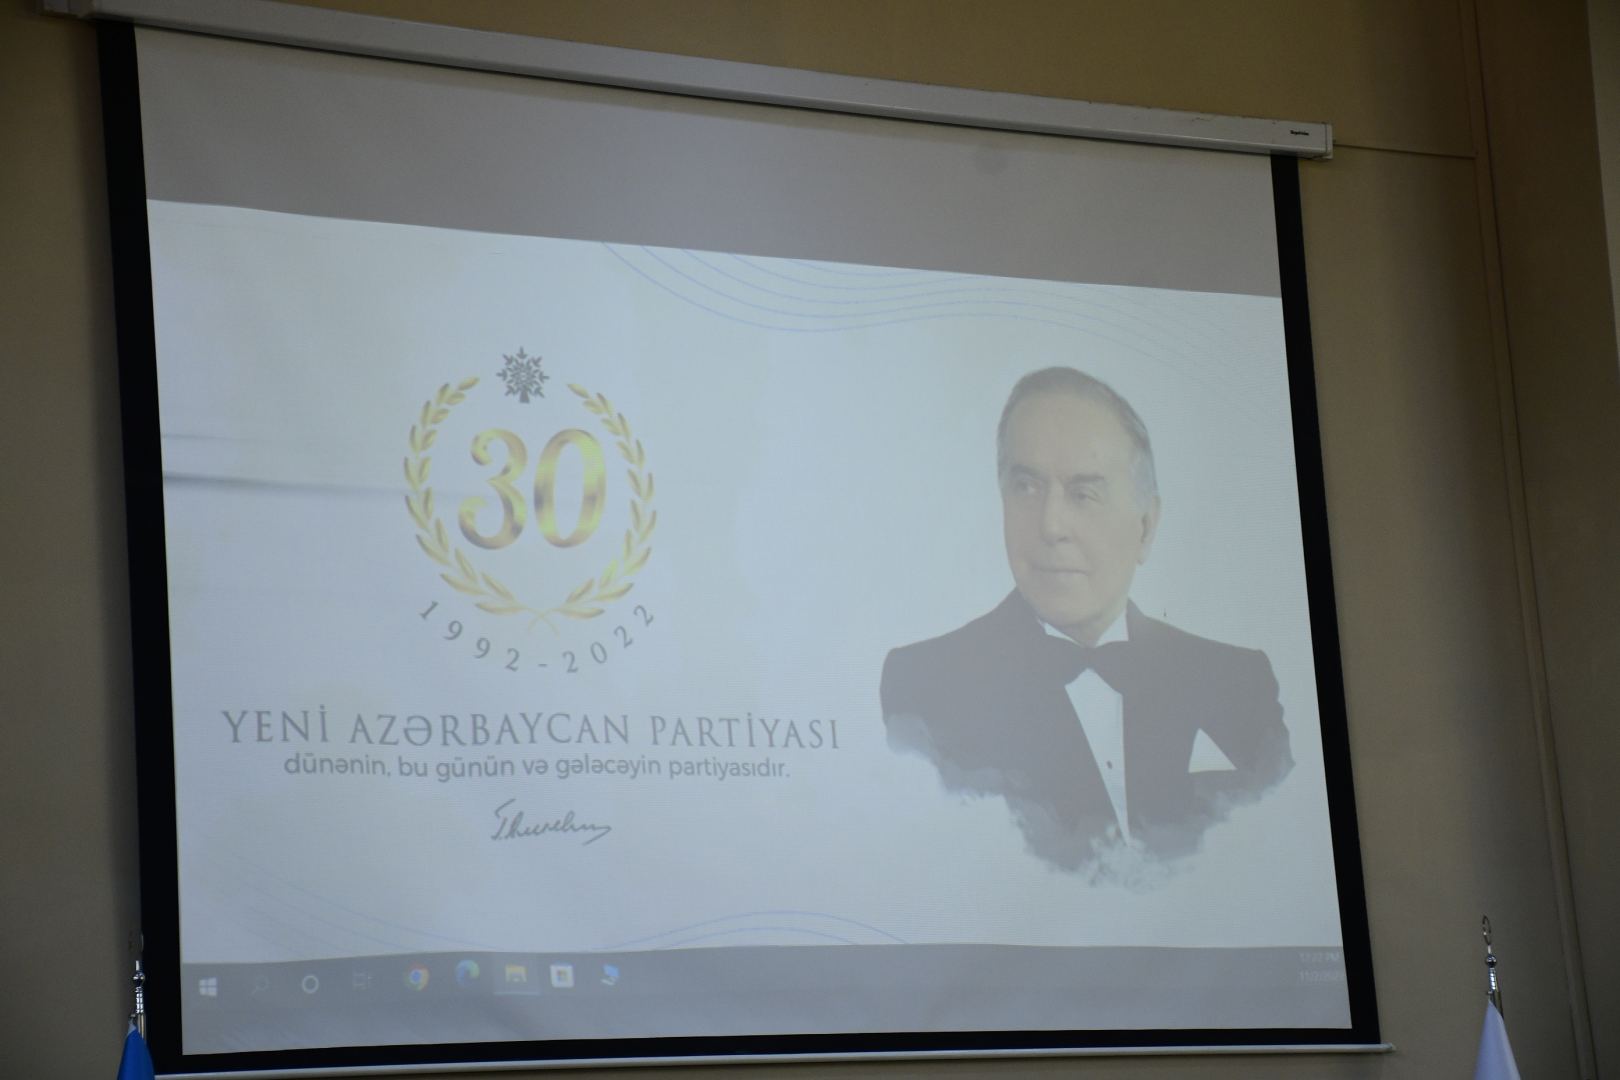 Yeni Azərbaycan Partiyası dünənin, bu günün və gələcəyin partiyasıdır (FOTO)